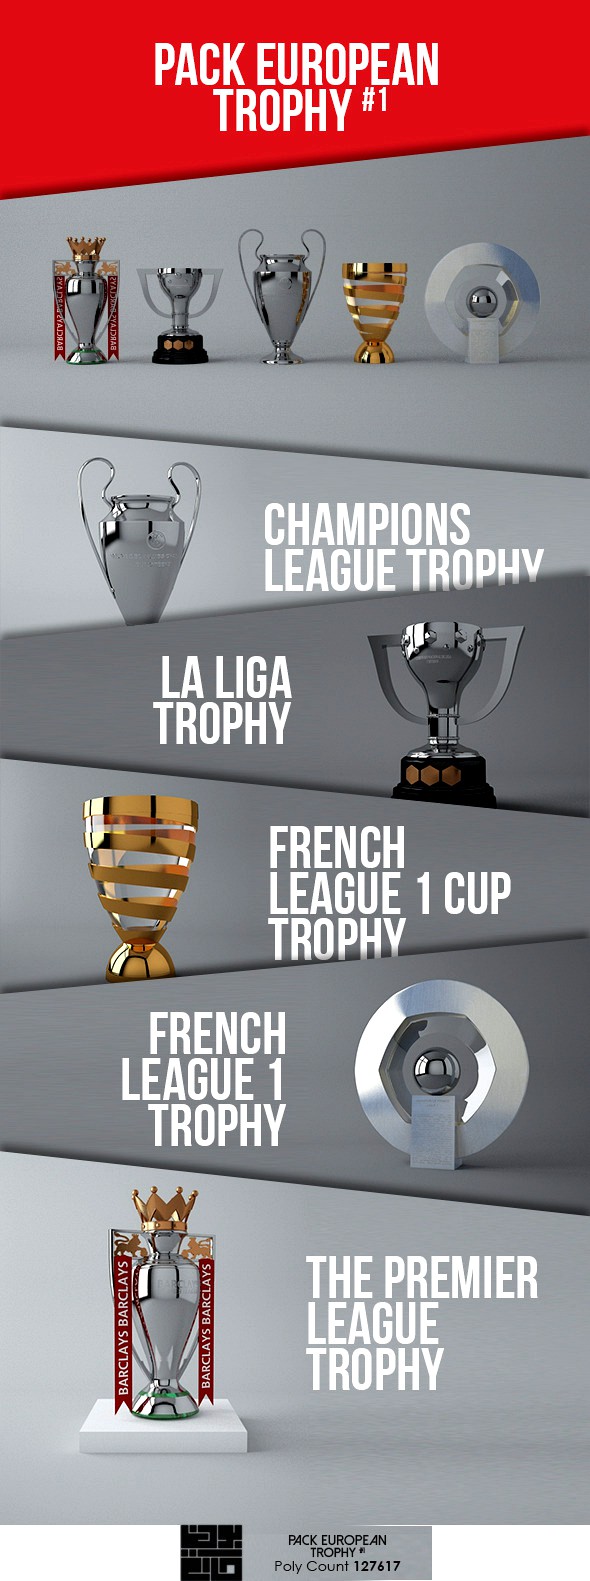 Pack European Trophy